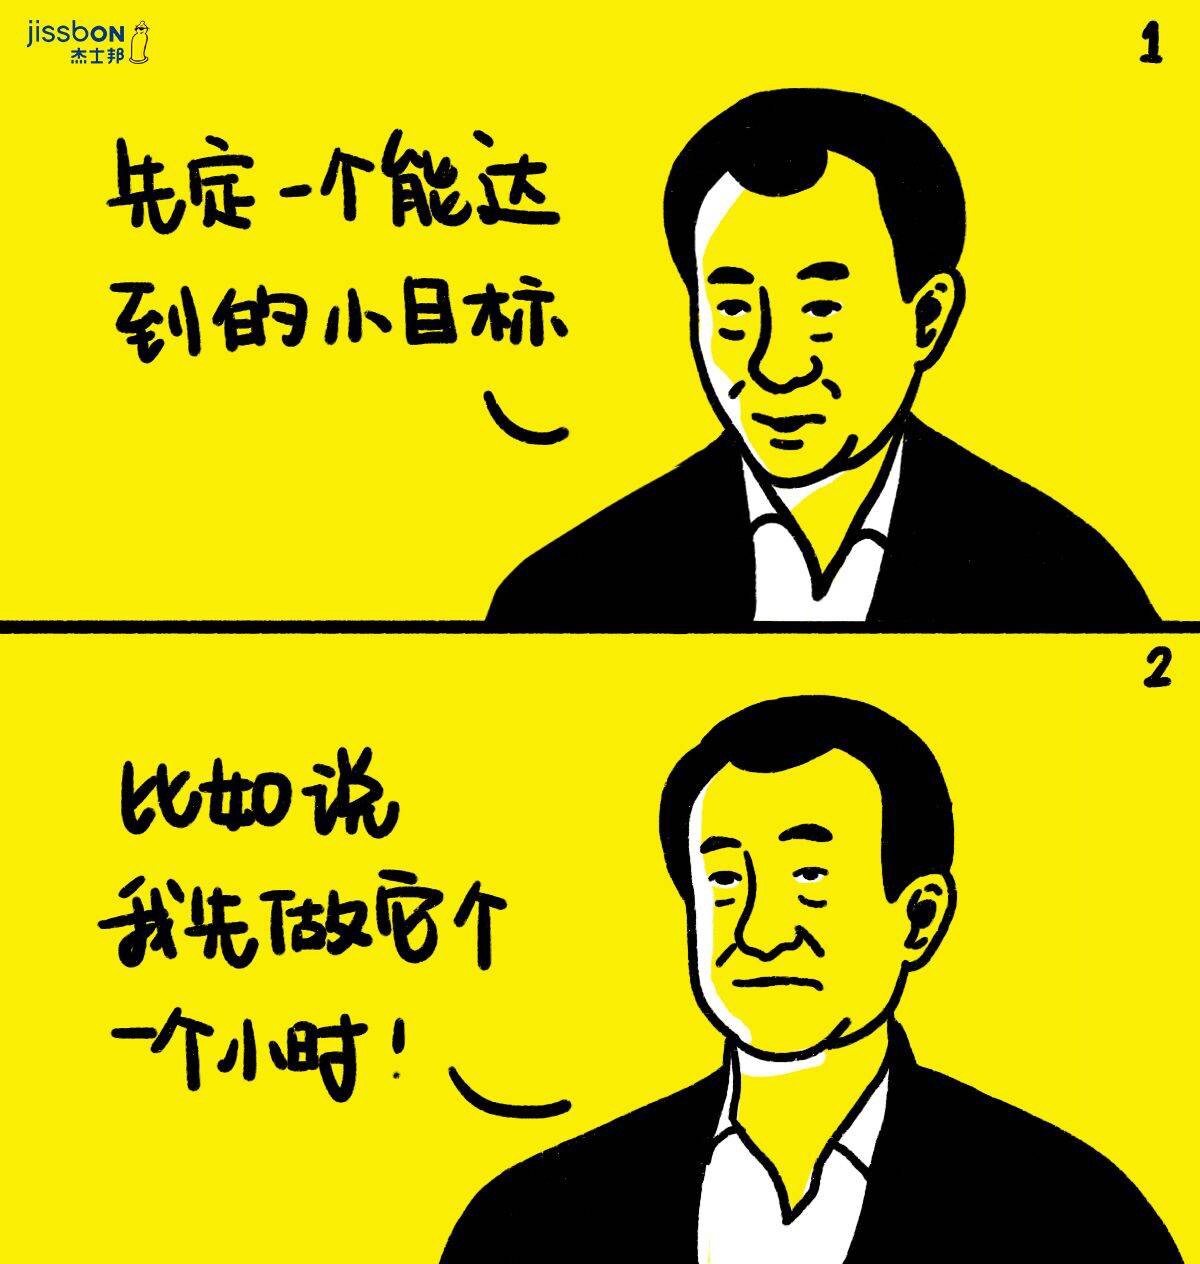 王健林一个亿小目标搞笑表情卡通图片手机壁纸_手机壁纸_mm4000图片大全